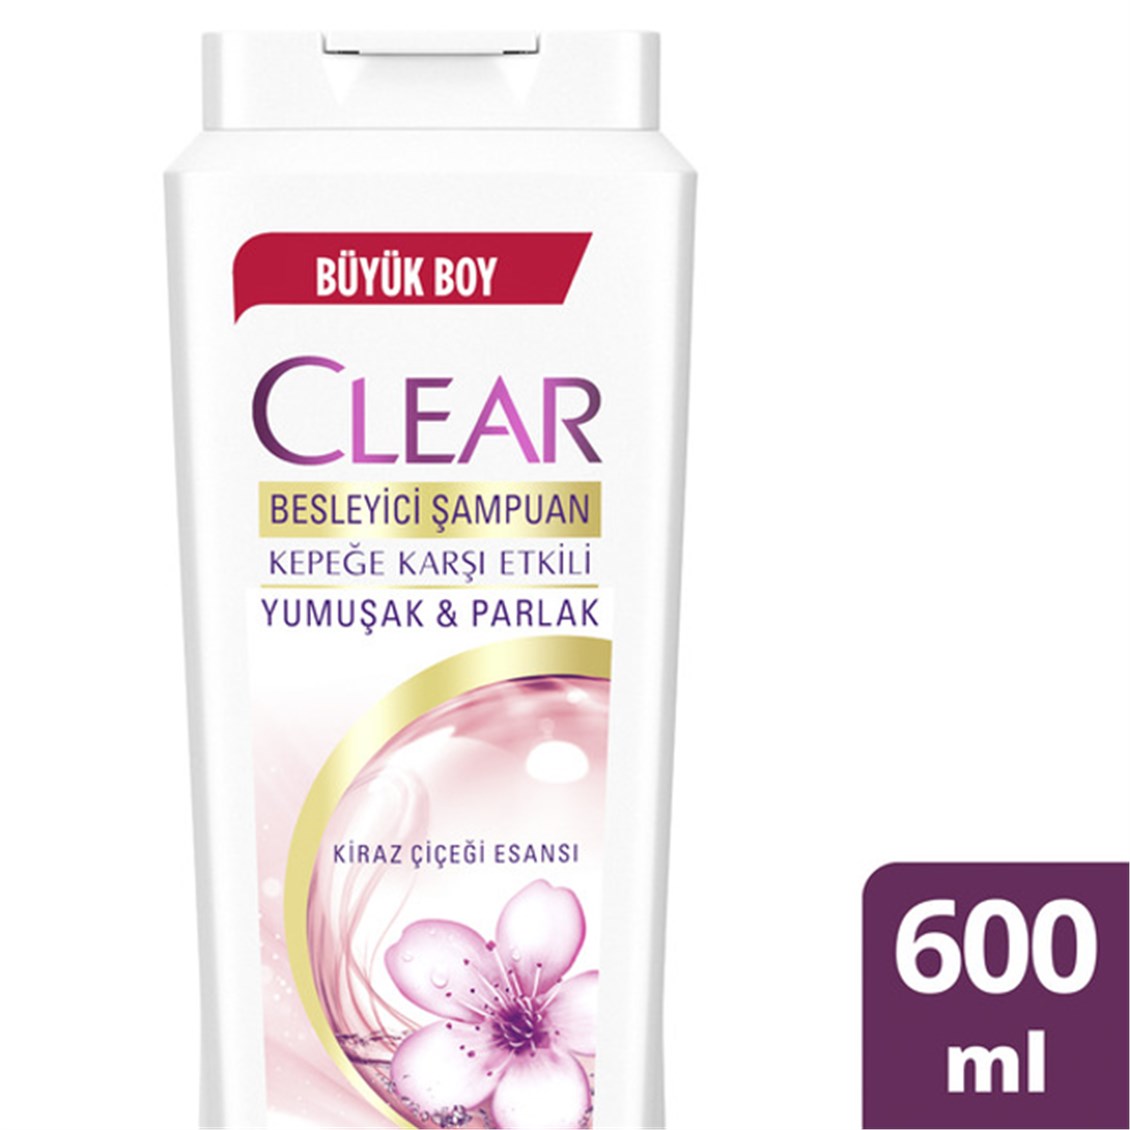 Clear Women Şampuan Yumuşak Parlak Kiraz Çiçeği 600 ml - Onur Market